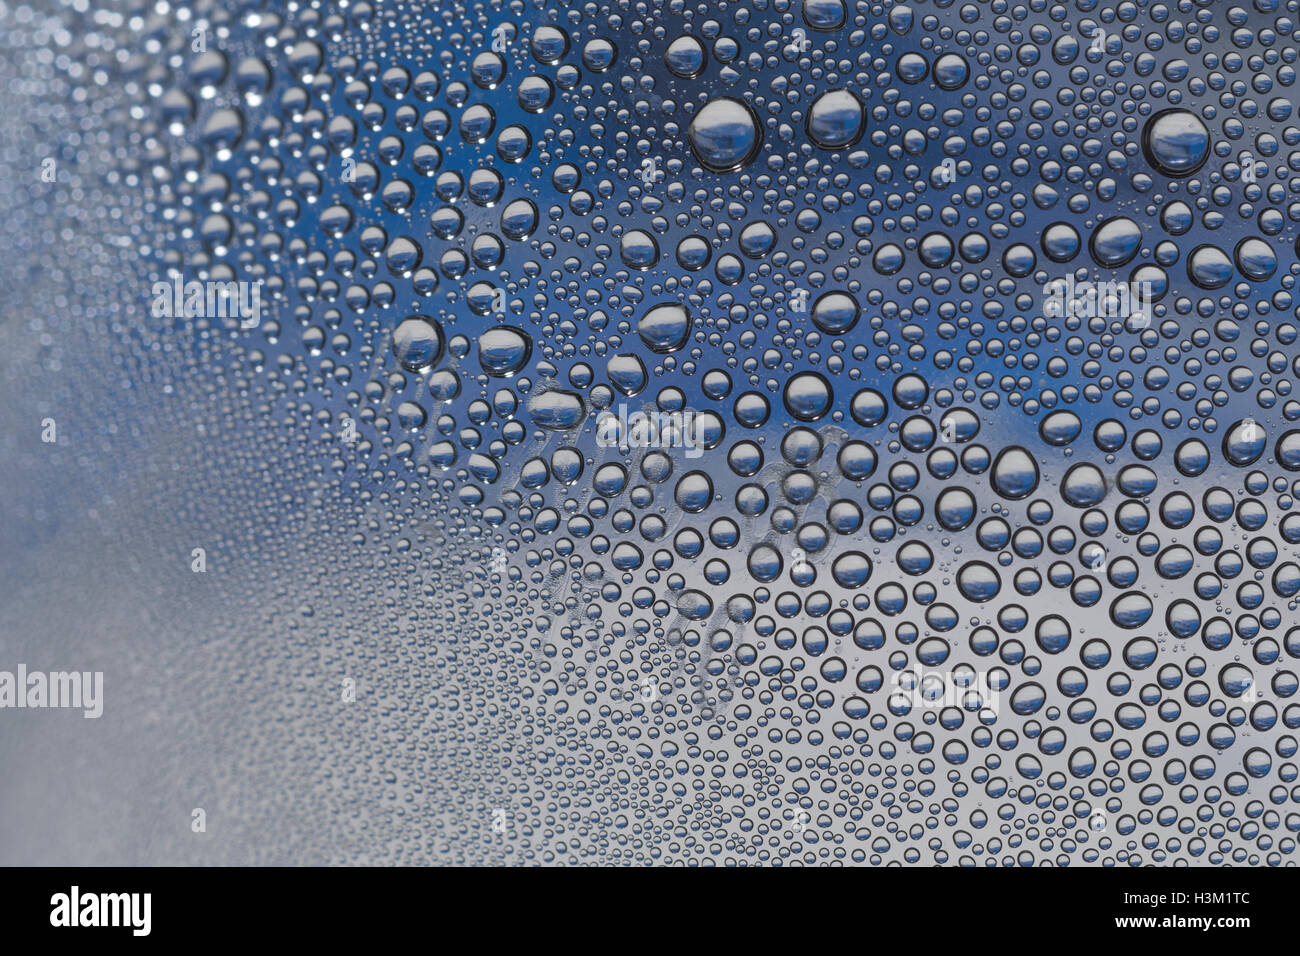 Image abstraite de perles de condensation d'eau à l'intérieur d'une bouteille en PTFE. Concept de la Journée mondiale de l'eau, résumé de la Journée de l'eau, marché du commerce de l'eau. Banque D'Images